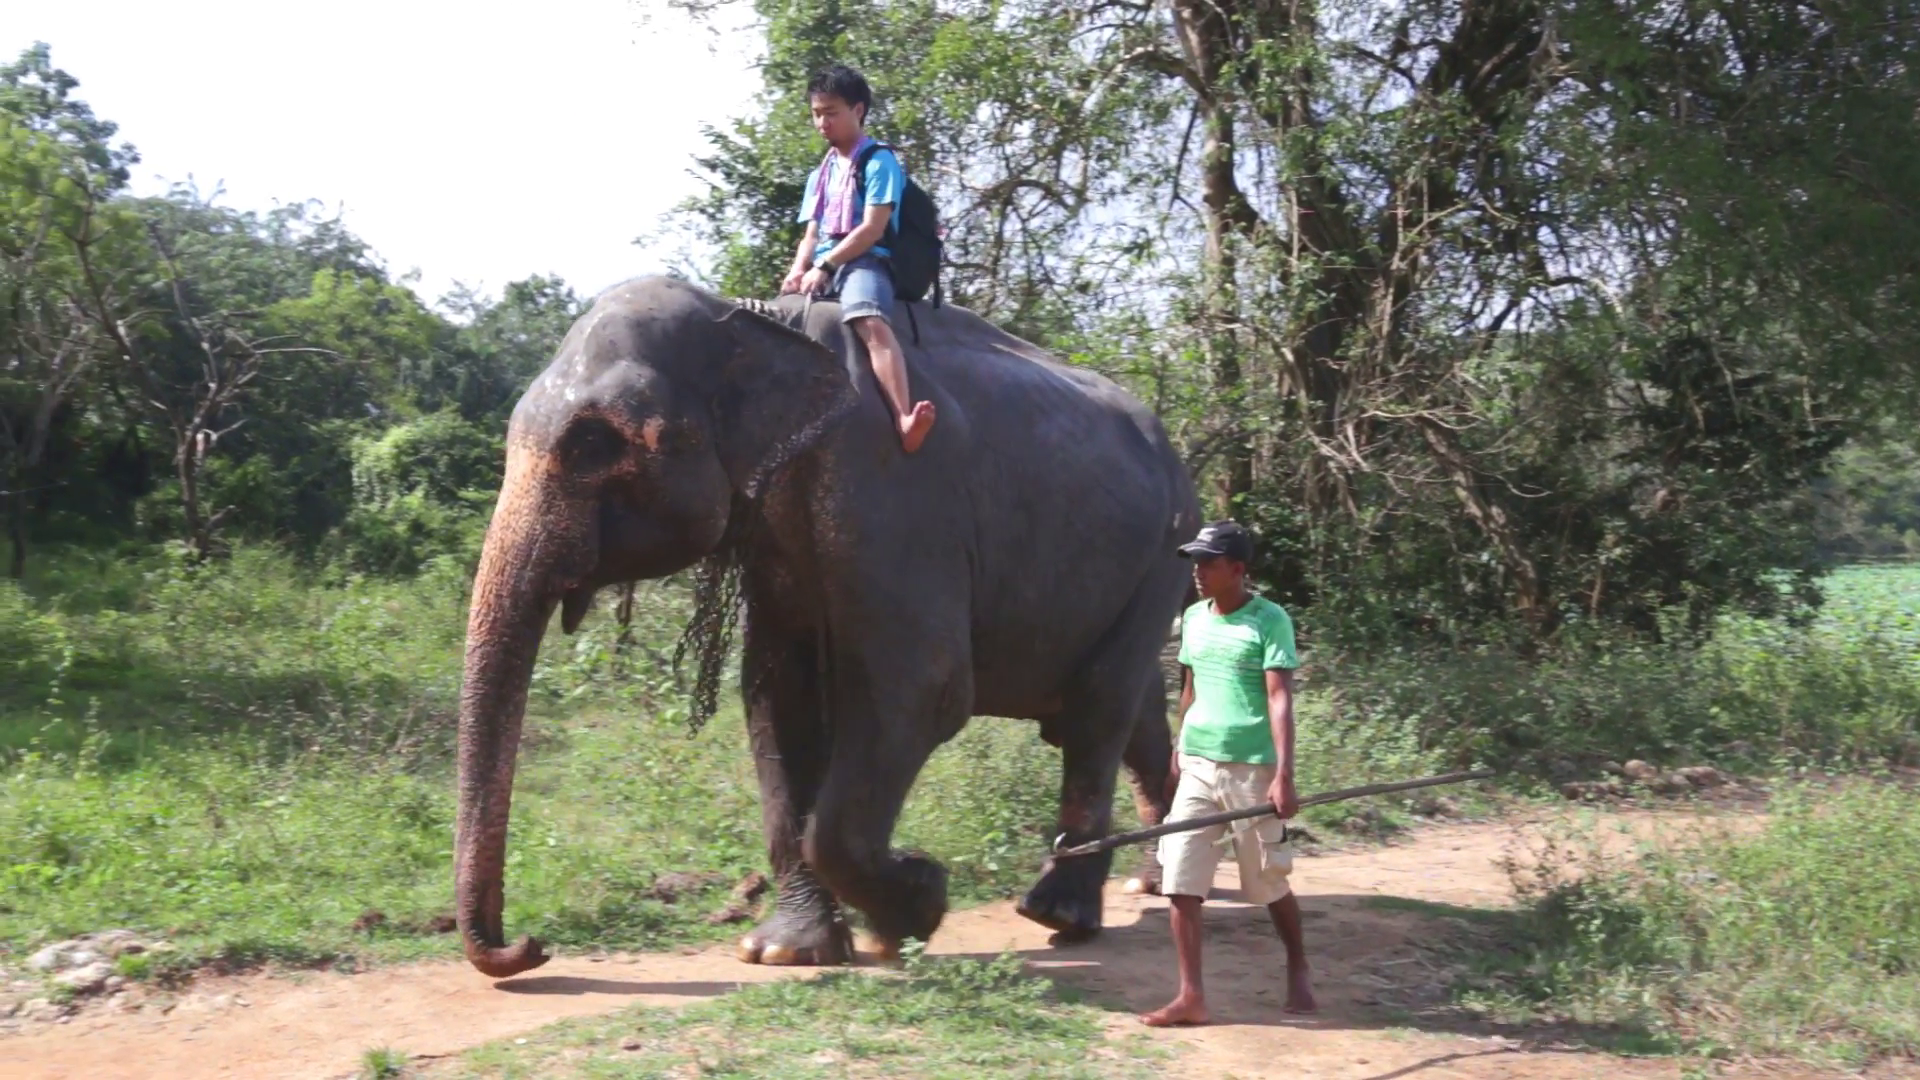 SIGIRIYA, SRI LANKA - FEBRUARY 2014: Elephant ride in nature in ...